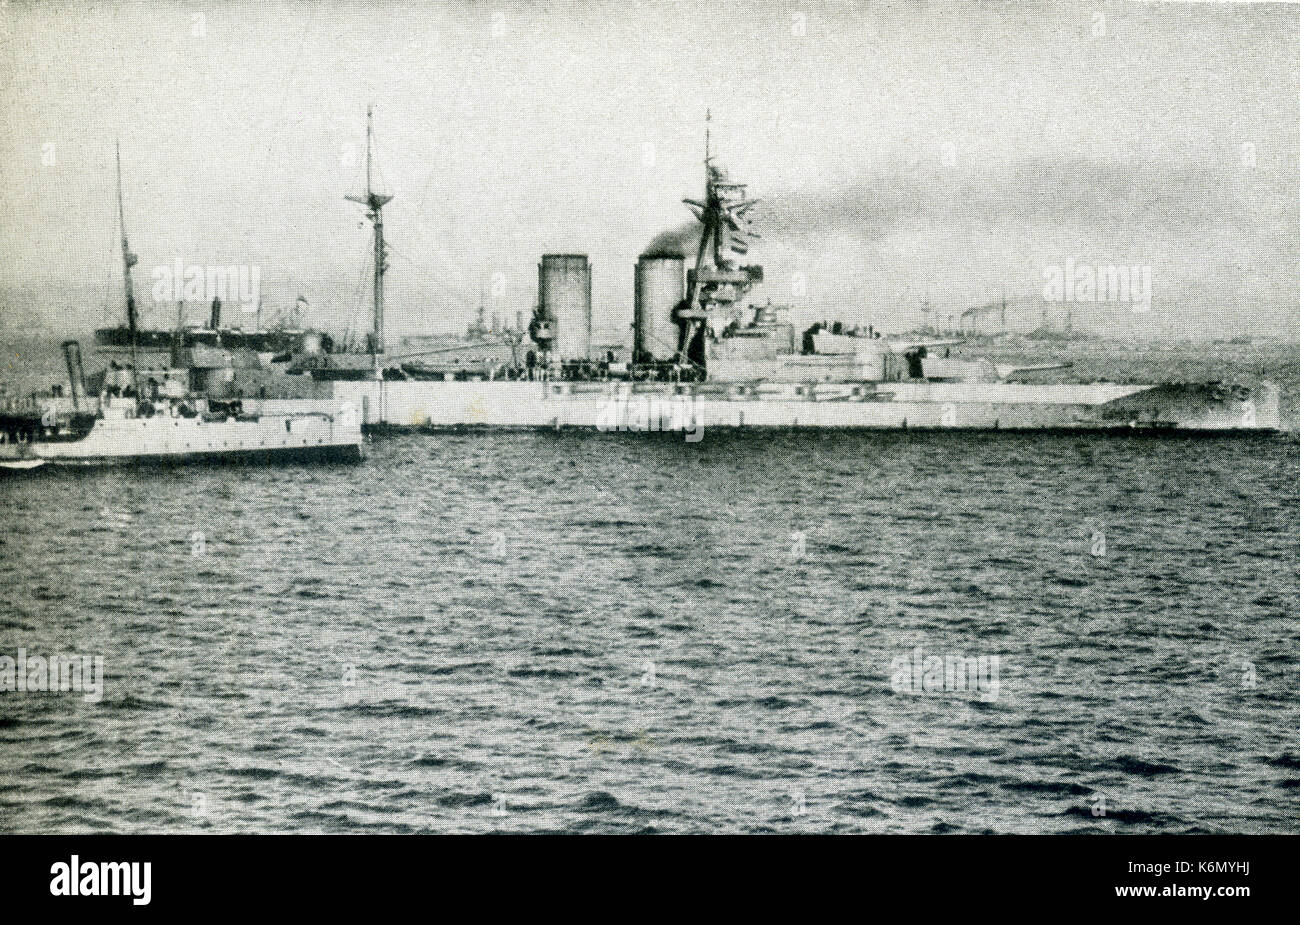 Cette photo prise au cours de la Première Guerre mondiale montre le H.M.S. La Reine Elizabeth, peut-être le plus célèbre navire de guerre dans le monde, bombardant le Cap Helles (Gallipoli) pour couvrir le débarquement des forces alliées. Elle a été le premier navire de guerre à transporter 15 canons de . Banque D'Images